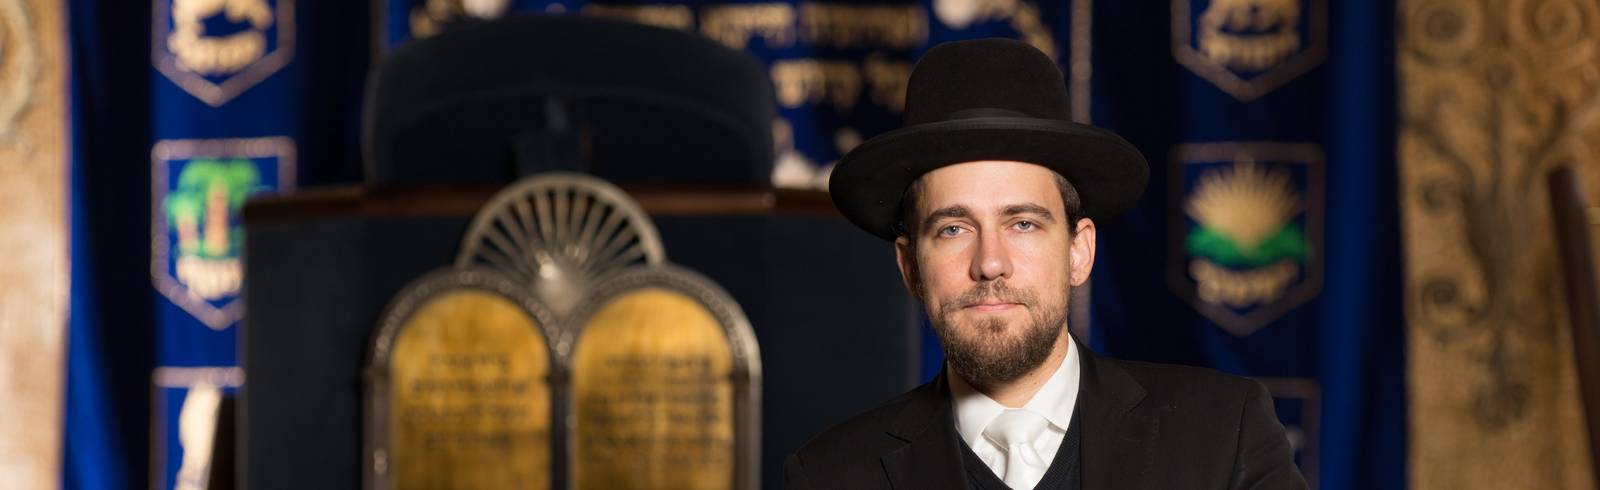 Rabbiner Hofmeister: „Judenregistrierungen? Das kann nicht ernstgemeint sein!"